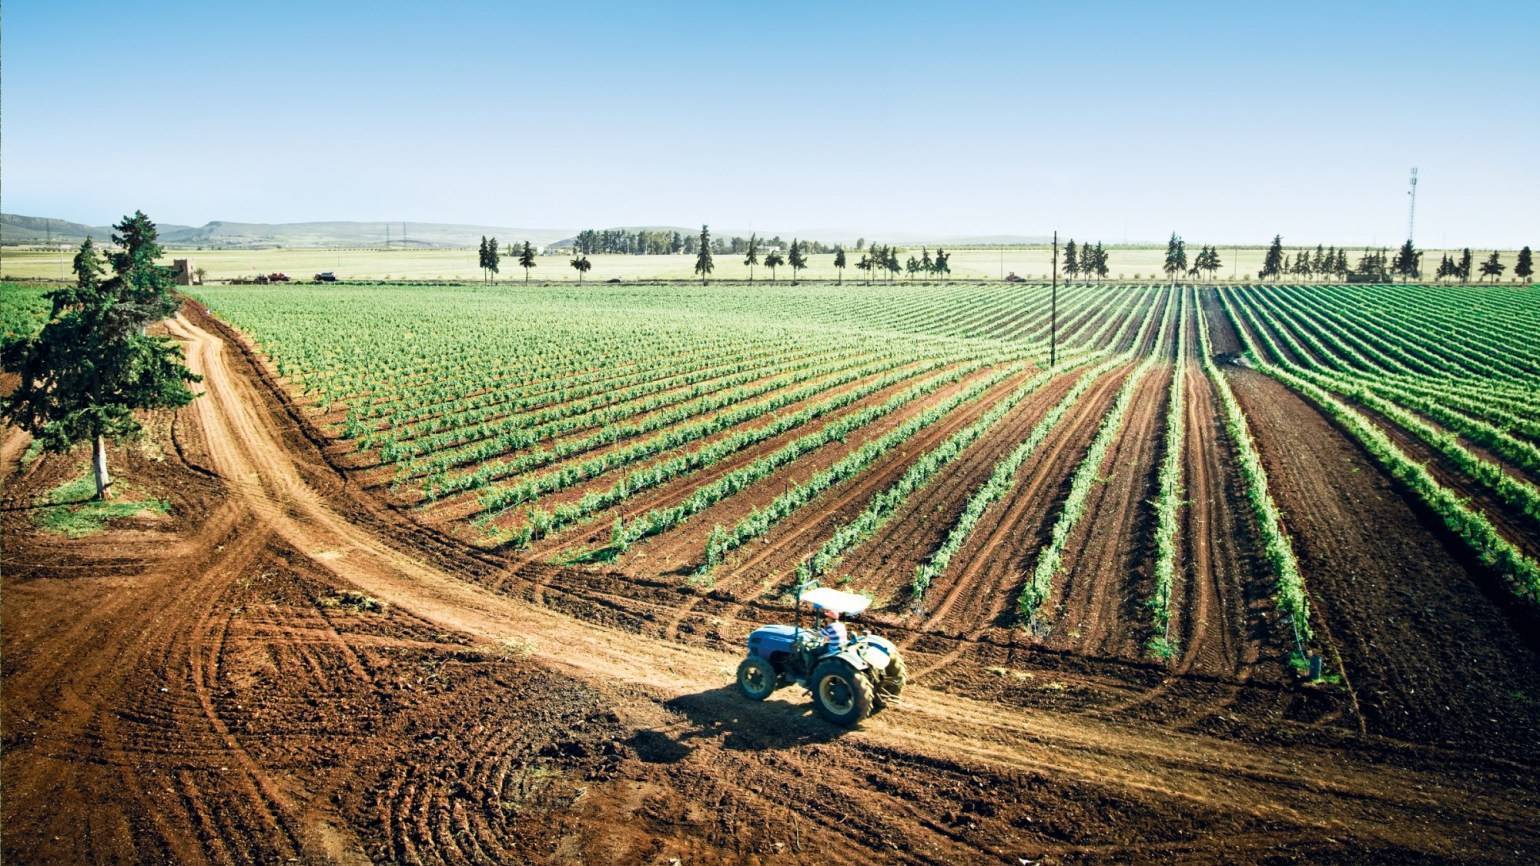 Земледелие это. BASF для сельского хозяйства. BASF Agricultural solutions. Сфера сельскохозяйства в Италии. Сельское хозяйство земледелие.